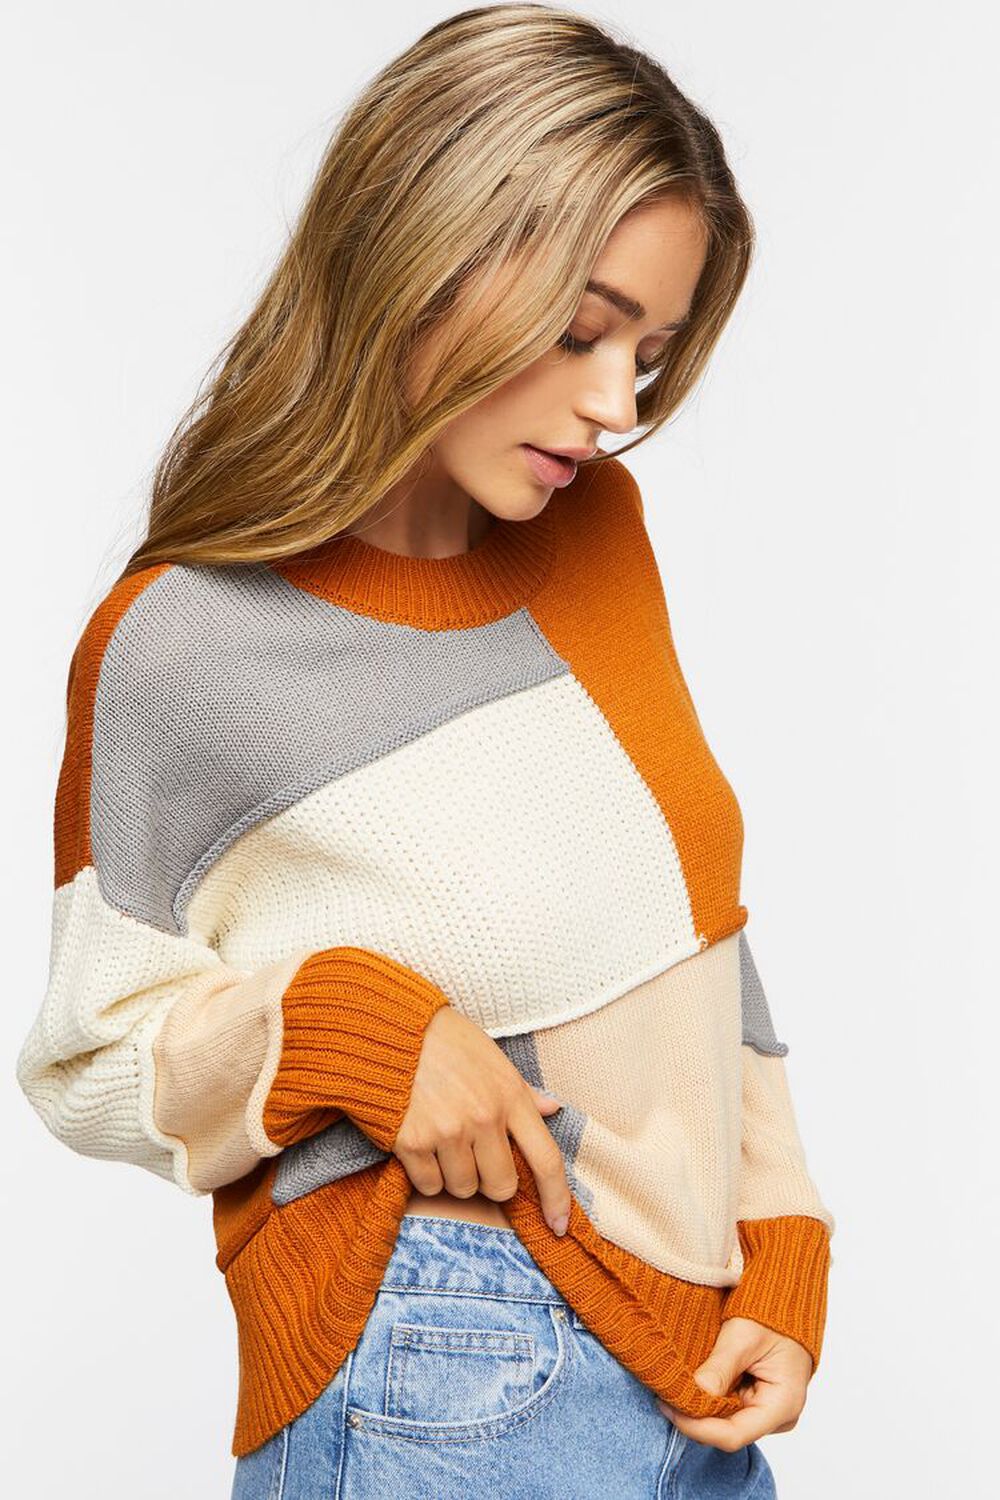 CAMEL/MULTI Colorblock Drop-Sleeve Sweater, image 2